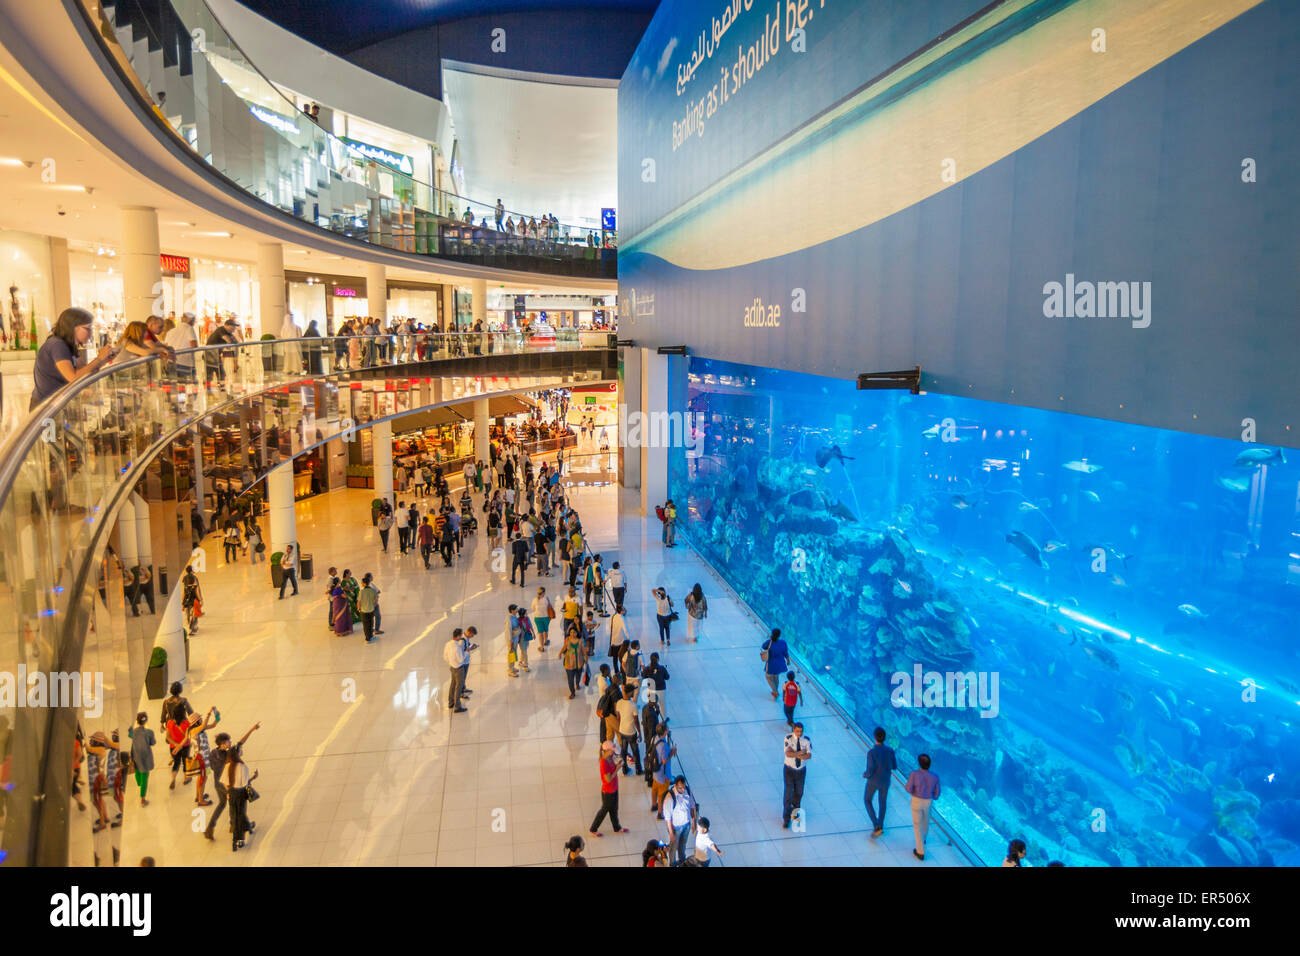 Aquarium de Dubaï, Dubaï Mall, la ville de Dubaï, Émirats arabes unis, ÉMIRATS ARABES UNIS, Moyen Orient Banque D'Images